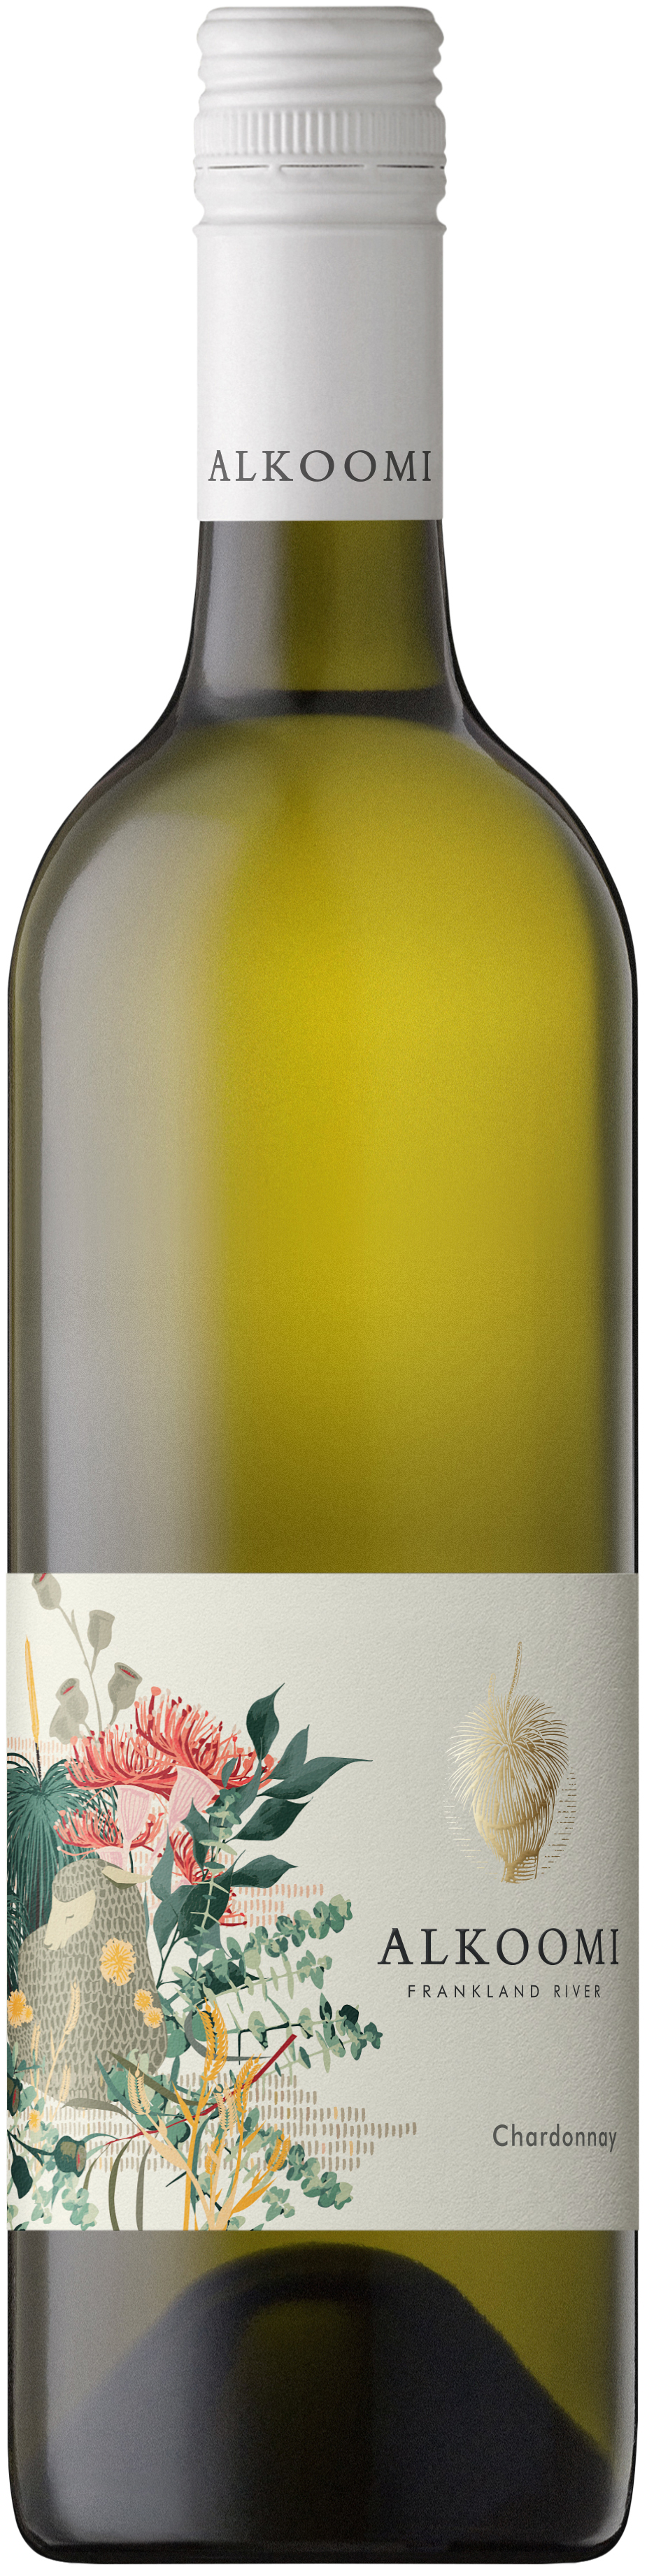 ドメーヌ・ストフラー ピノ・グリ 750ml 12本セット 白ワイン 辛口 フランス 白ワイン